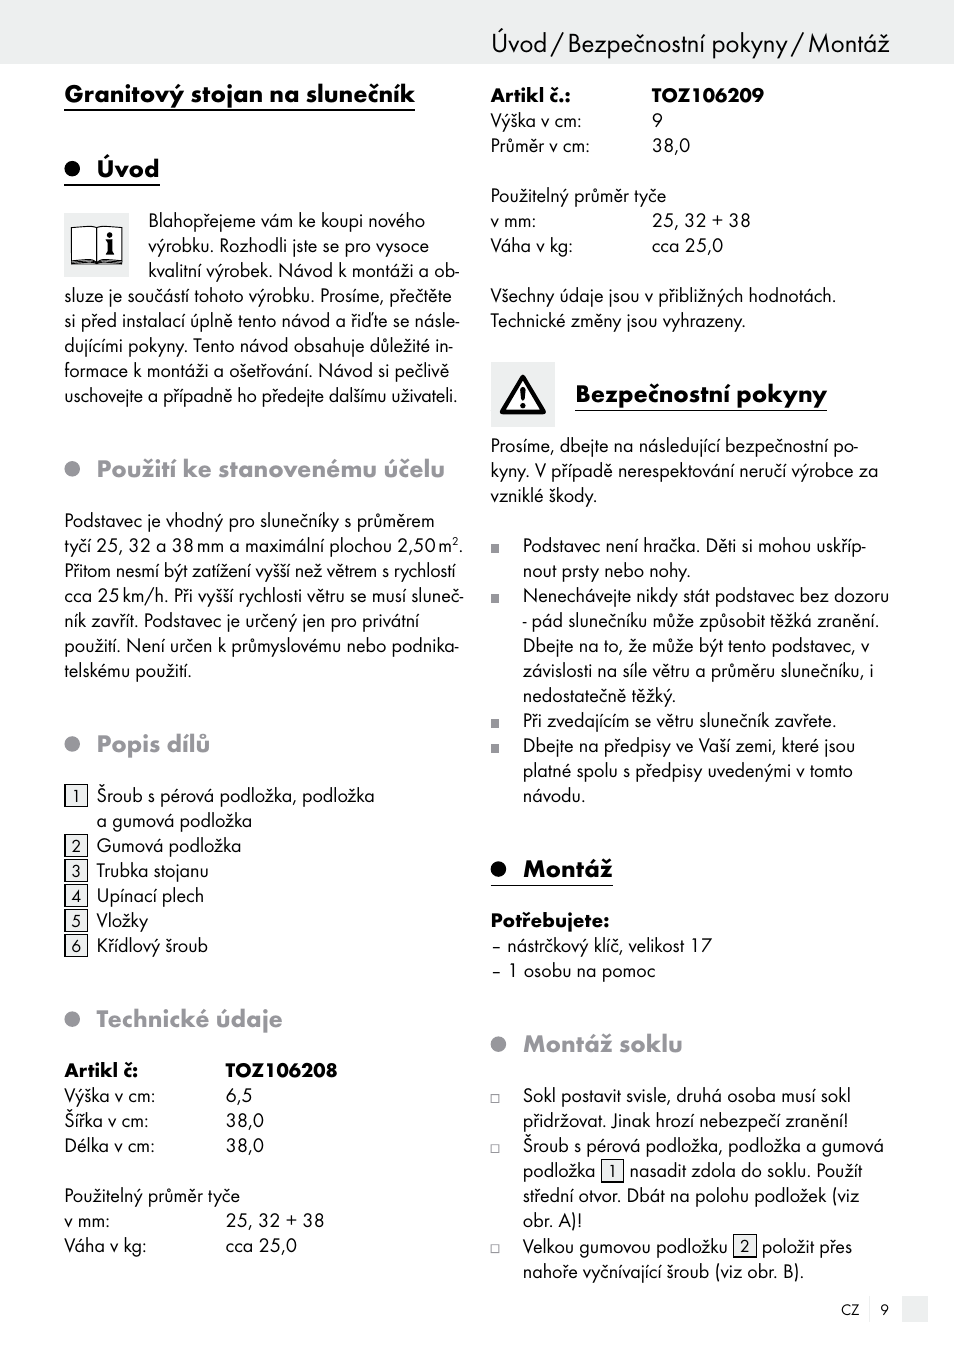 Úvod / bezpečnostní pokyny / montáž, Granitový stojan na slunečník úvod,  Použití ke stanovenému účelu | Florabest 85897KASR /Q User Manual | Page 9  / 15 | Original mode